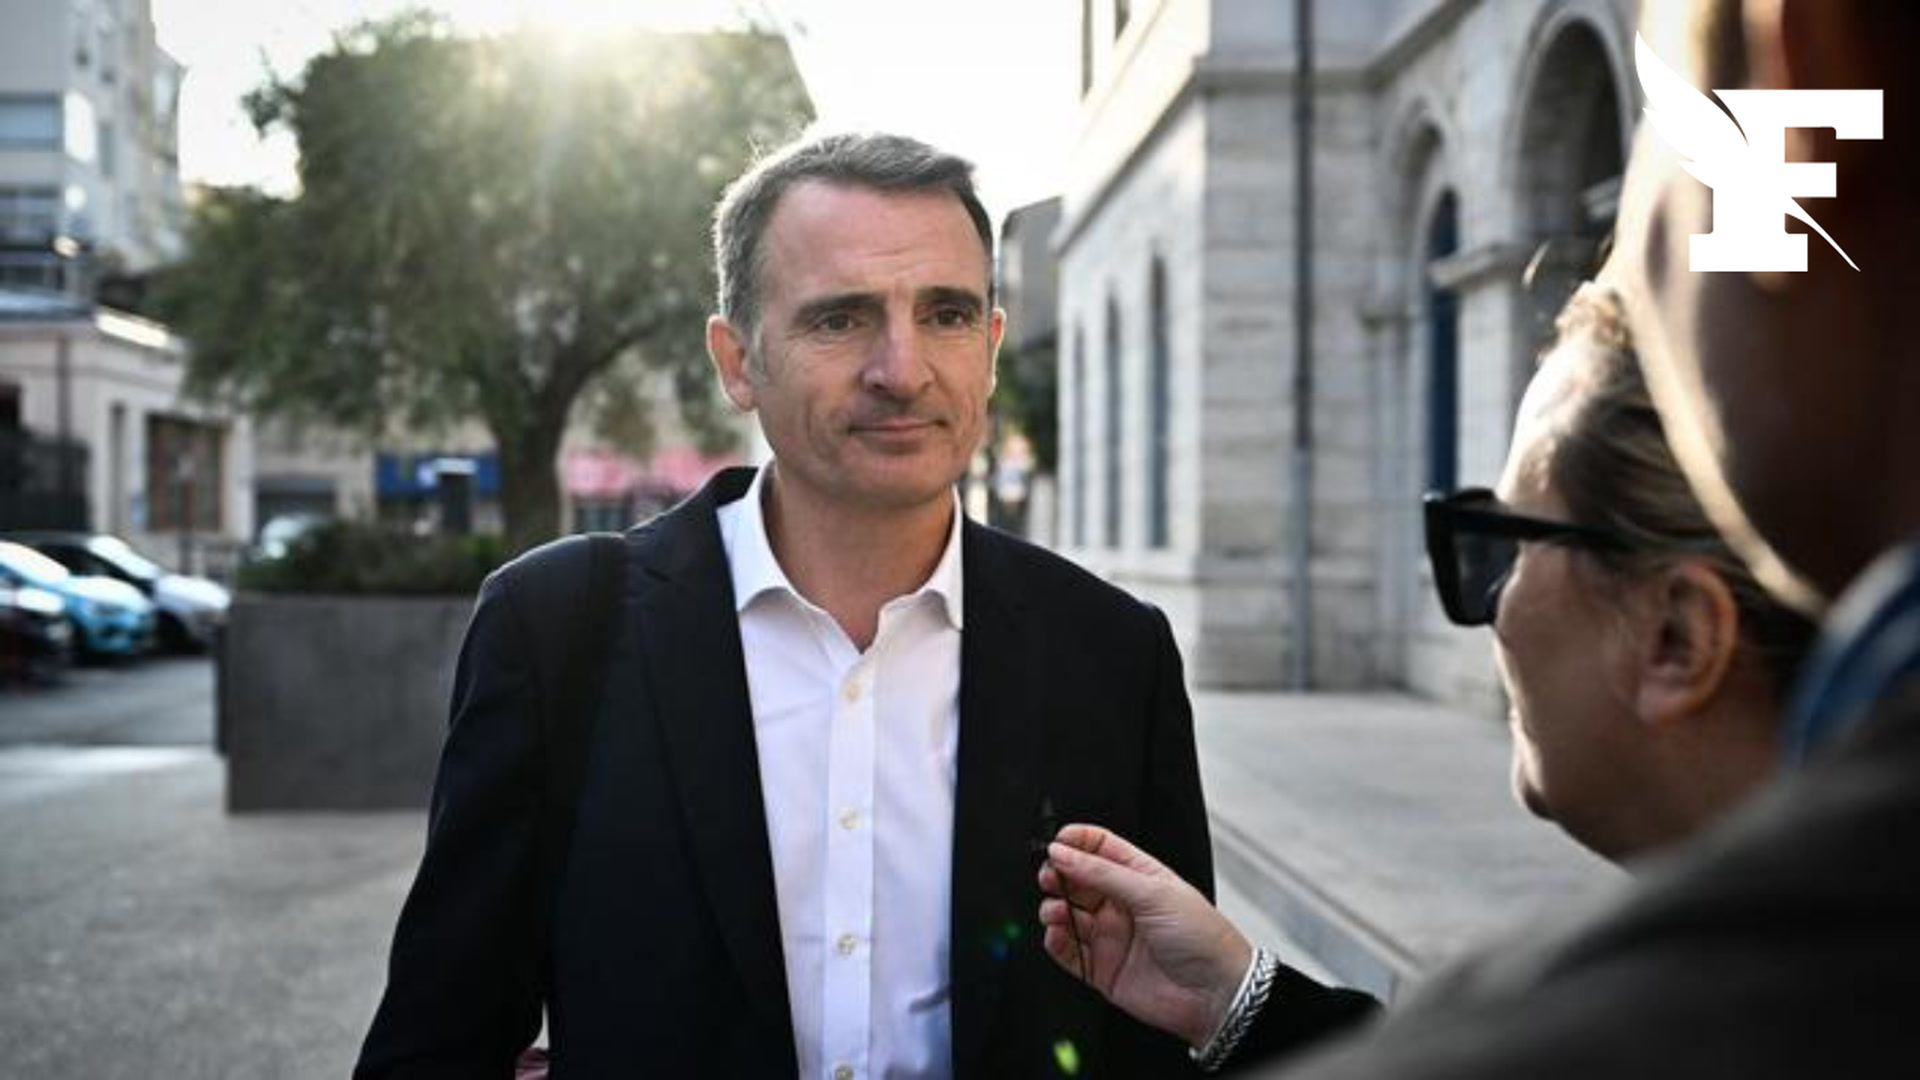 Le maire EELV de Grenoble réclame la suppression des jours fériés religieux au profit de fêtes laïques